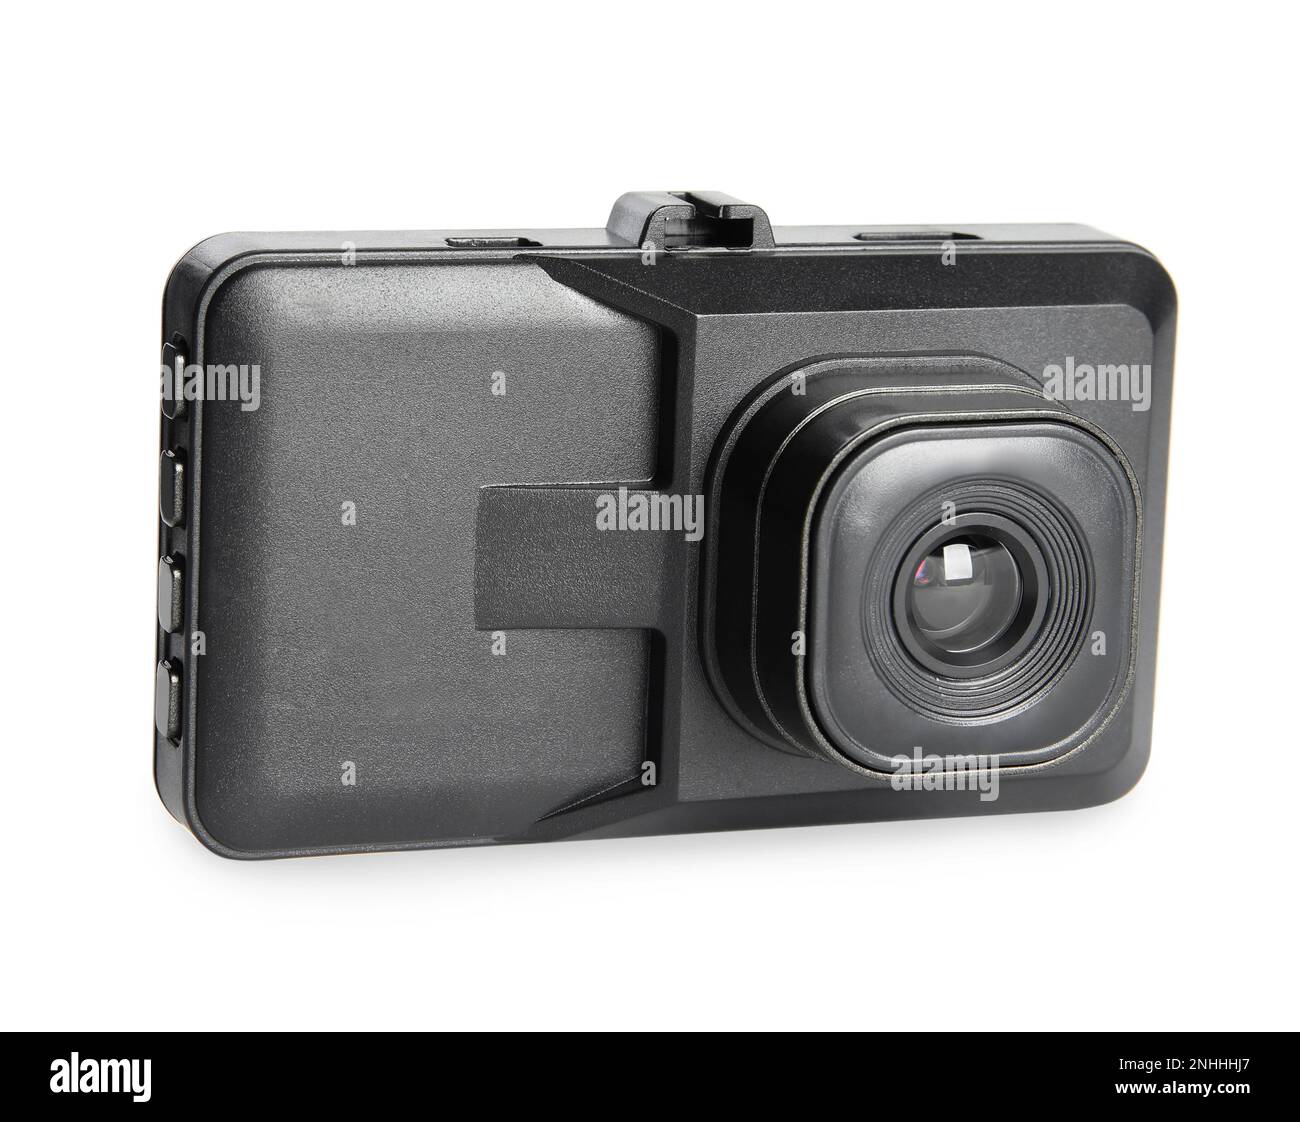 TrueCam - Professional Dashcams (Black Box, Car Cameras)